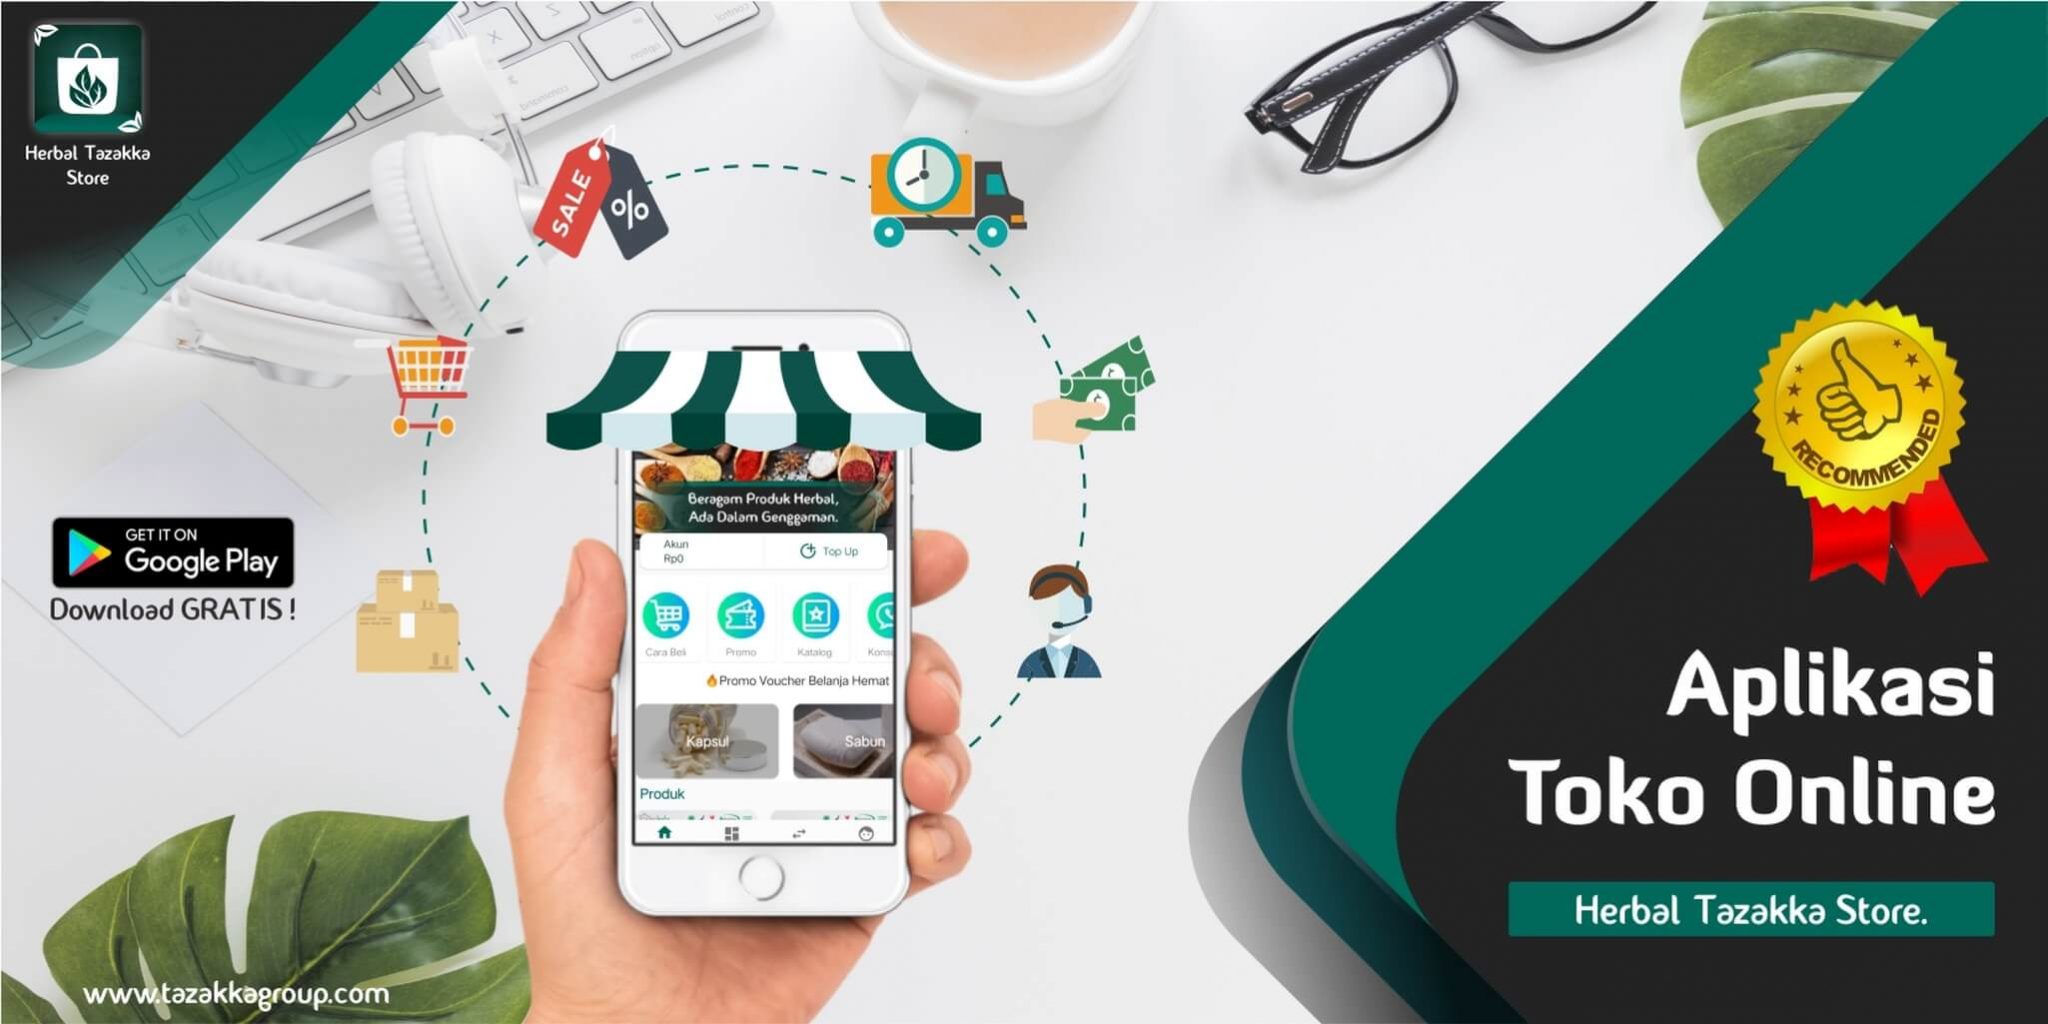 Aplikasi Toko Online Shop Android Herbal Tazakka Store